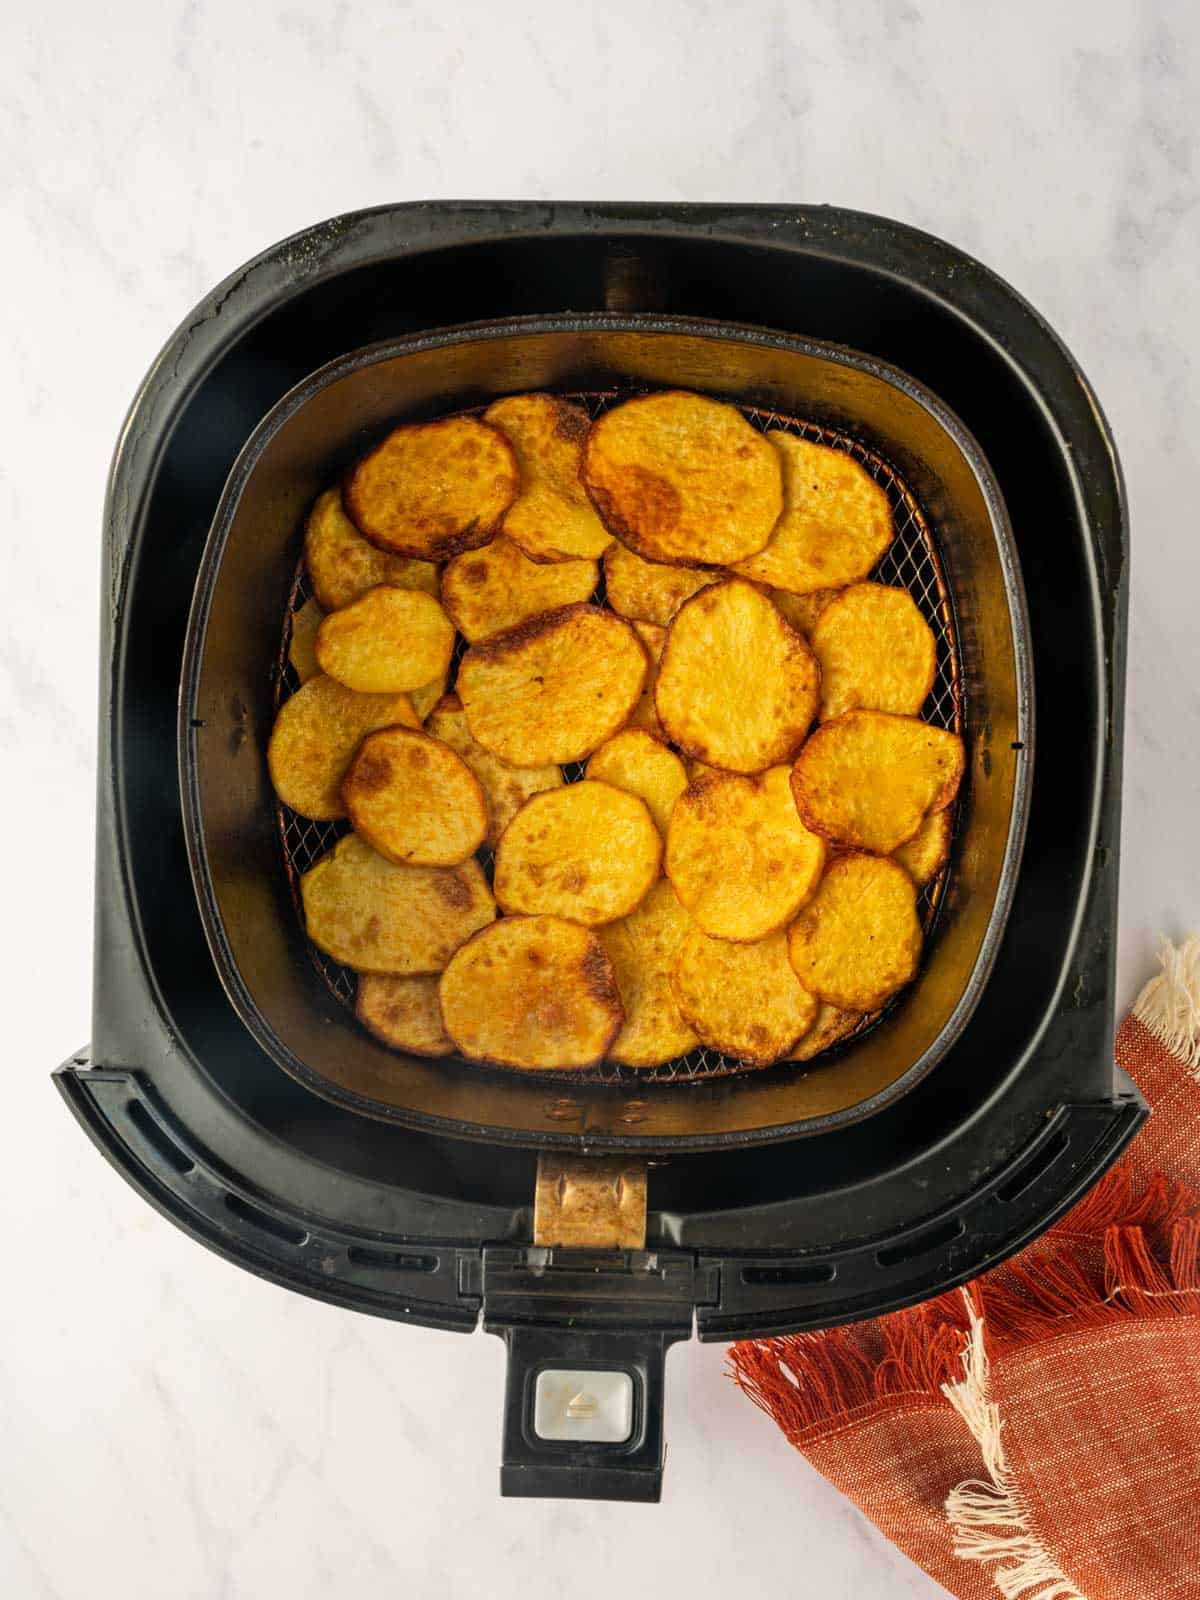 Golden, crispy potatoes in an air fryer basket.